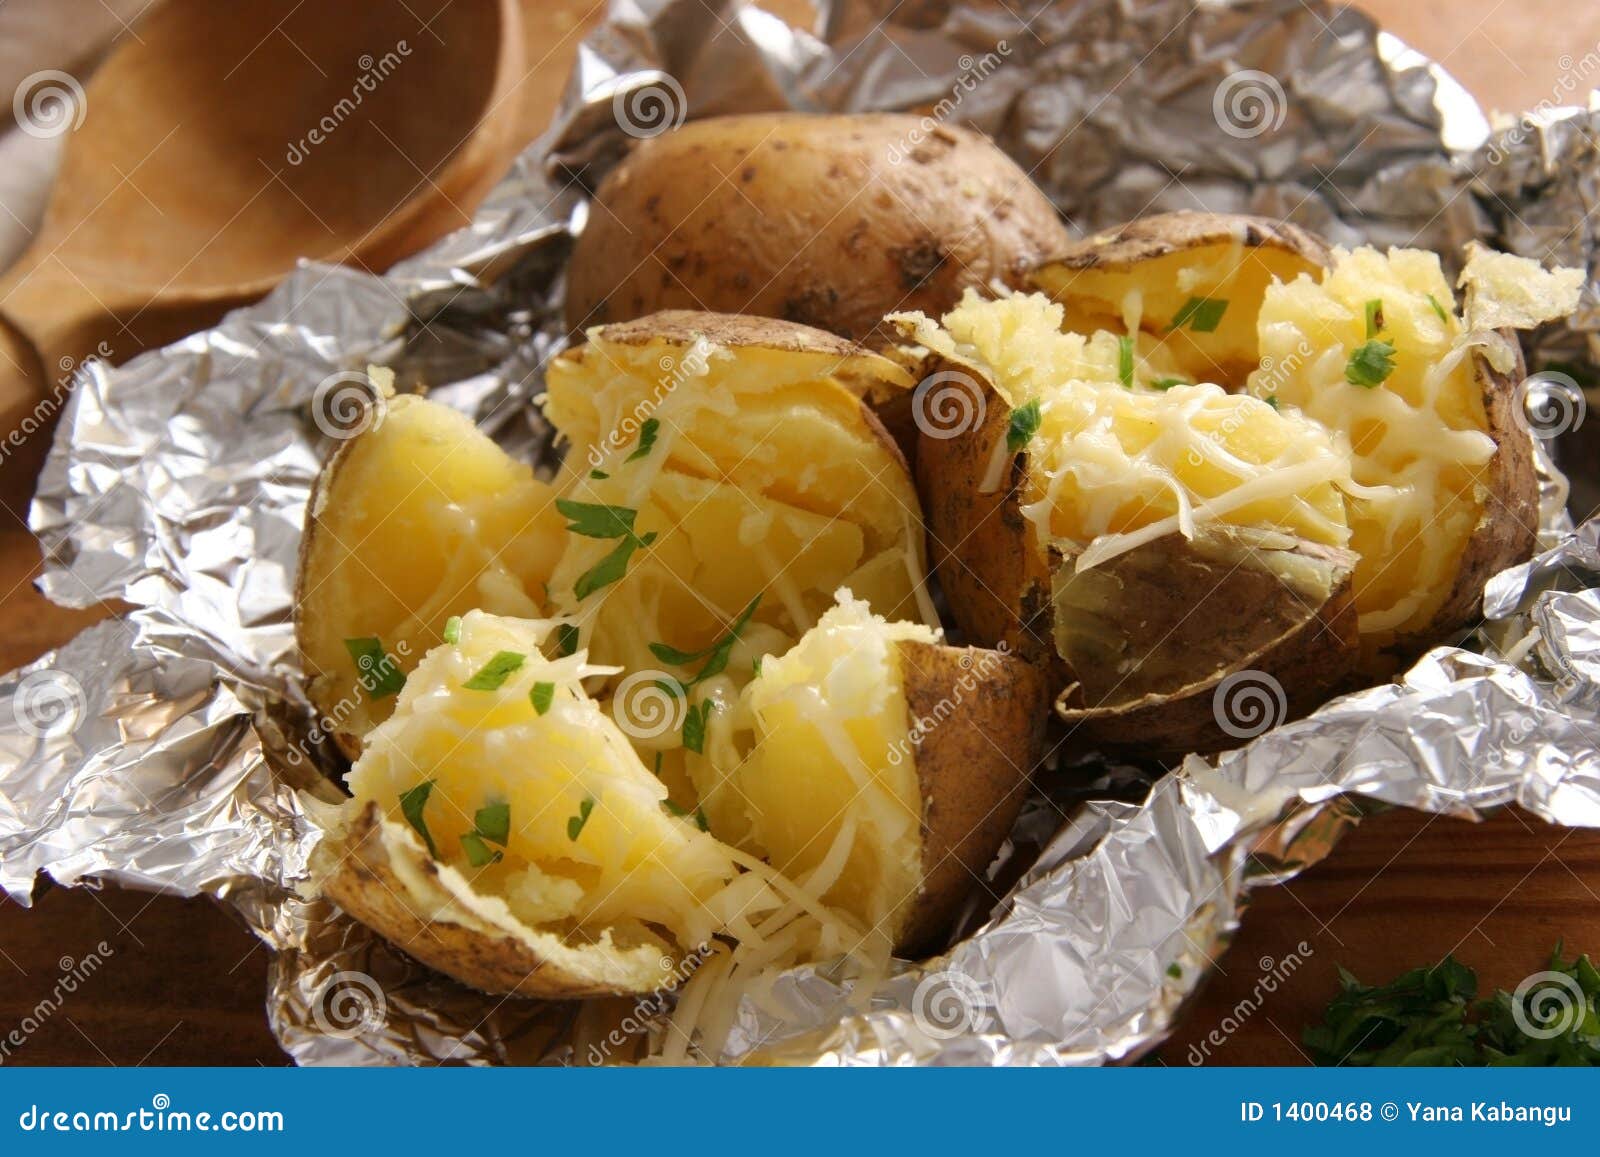 baked potatoes.